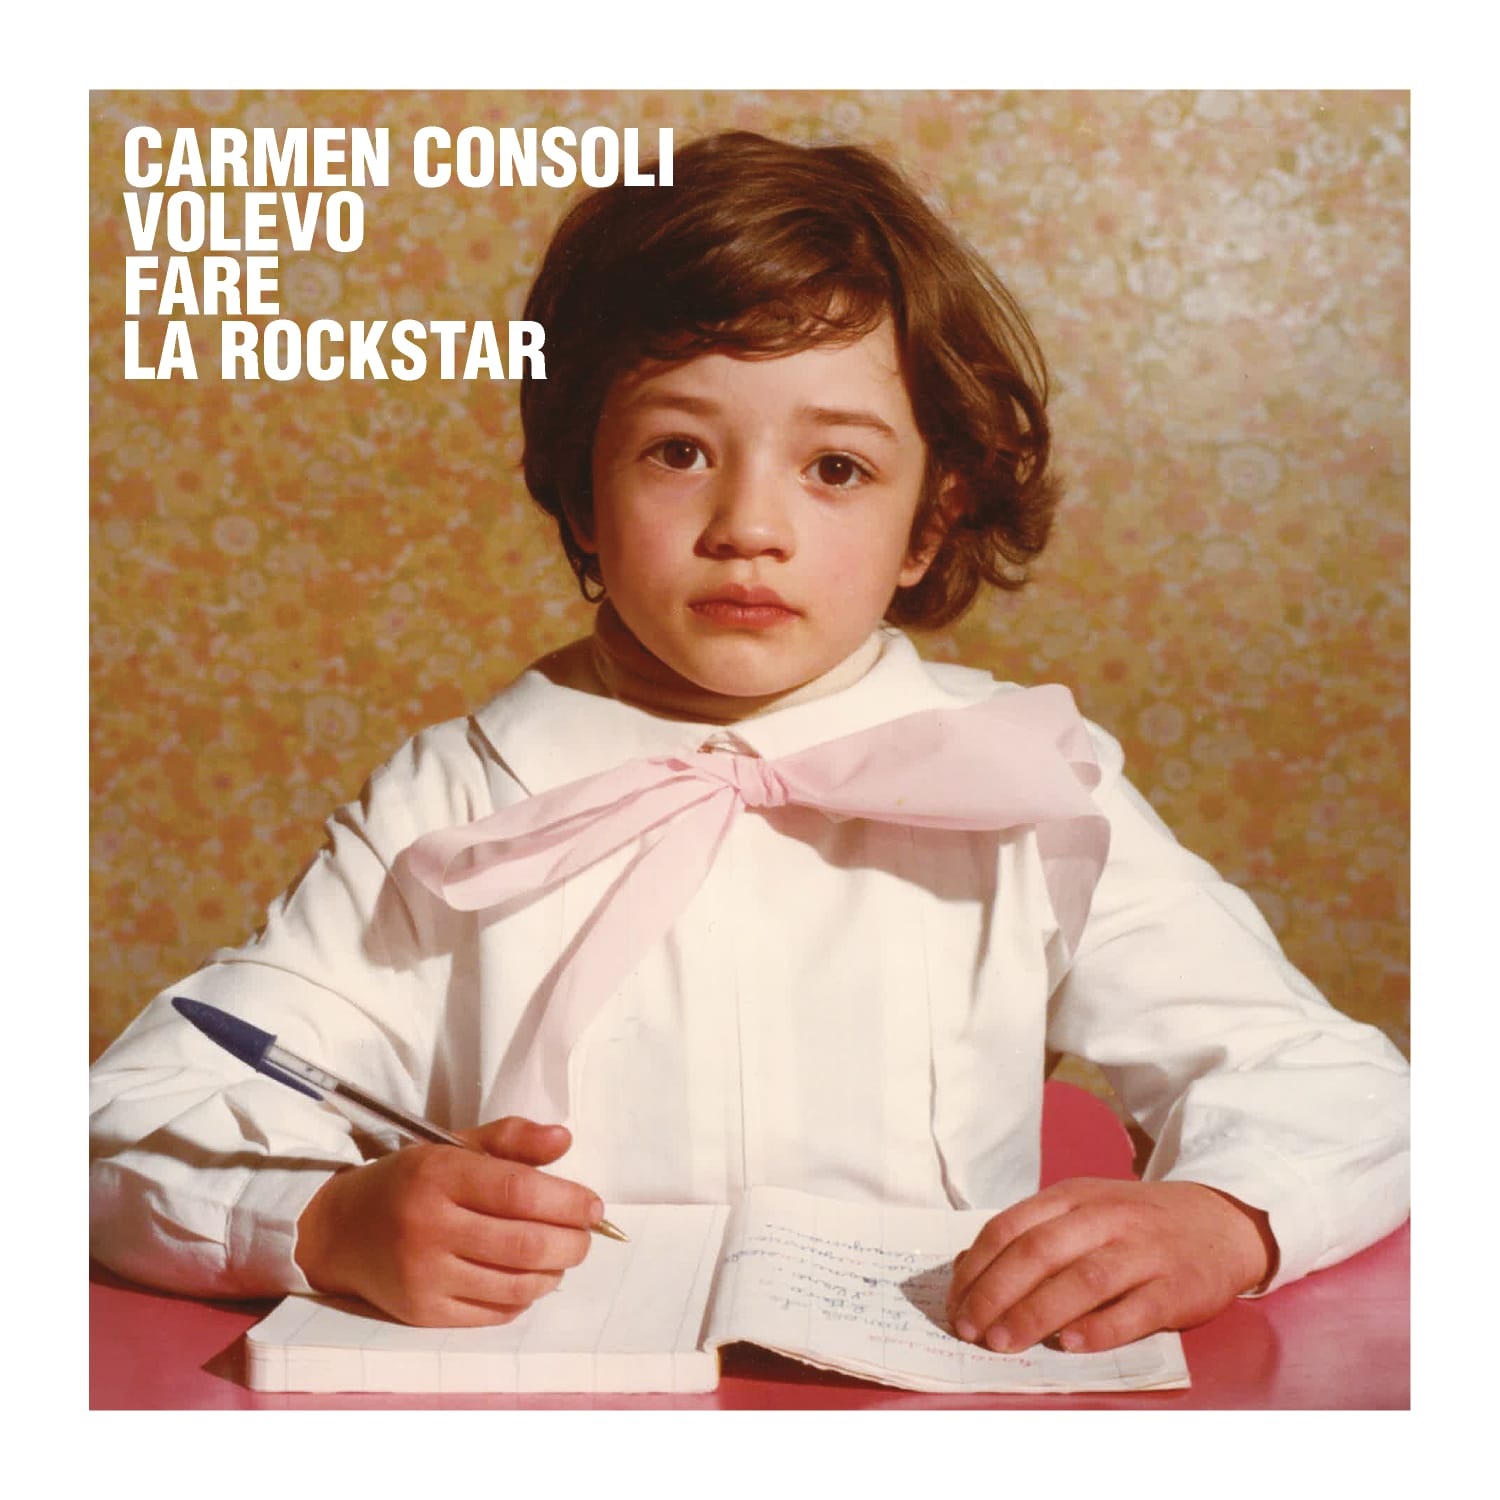 Carmen Consoli - Volevo fare la rockstar